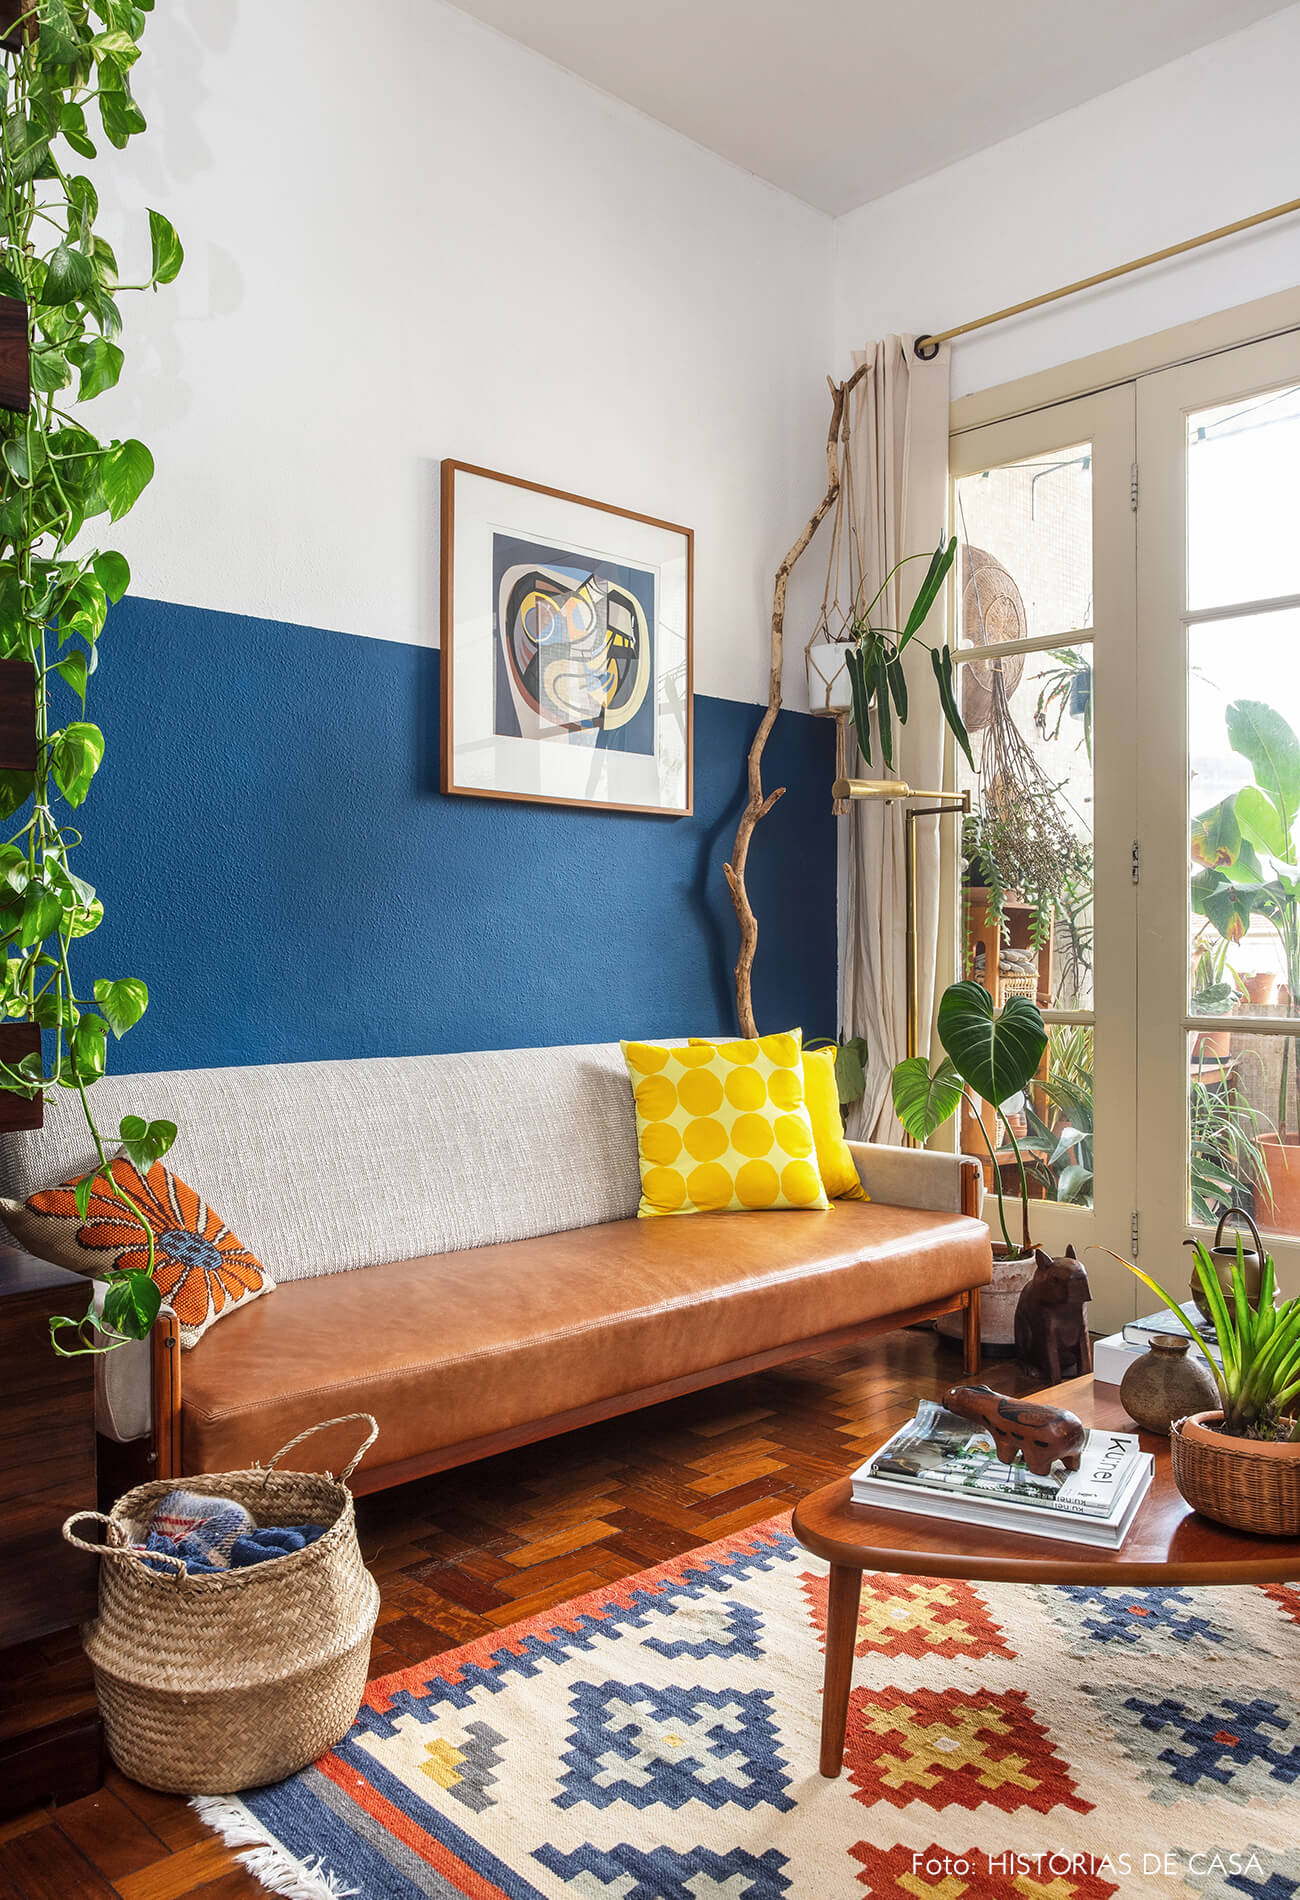 Sala colorida com móveis vintage e plantas